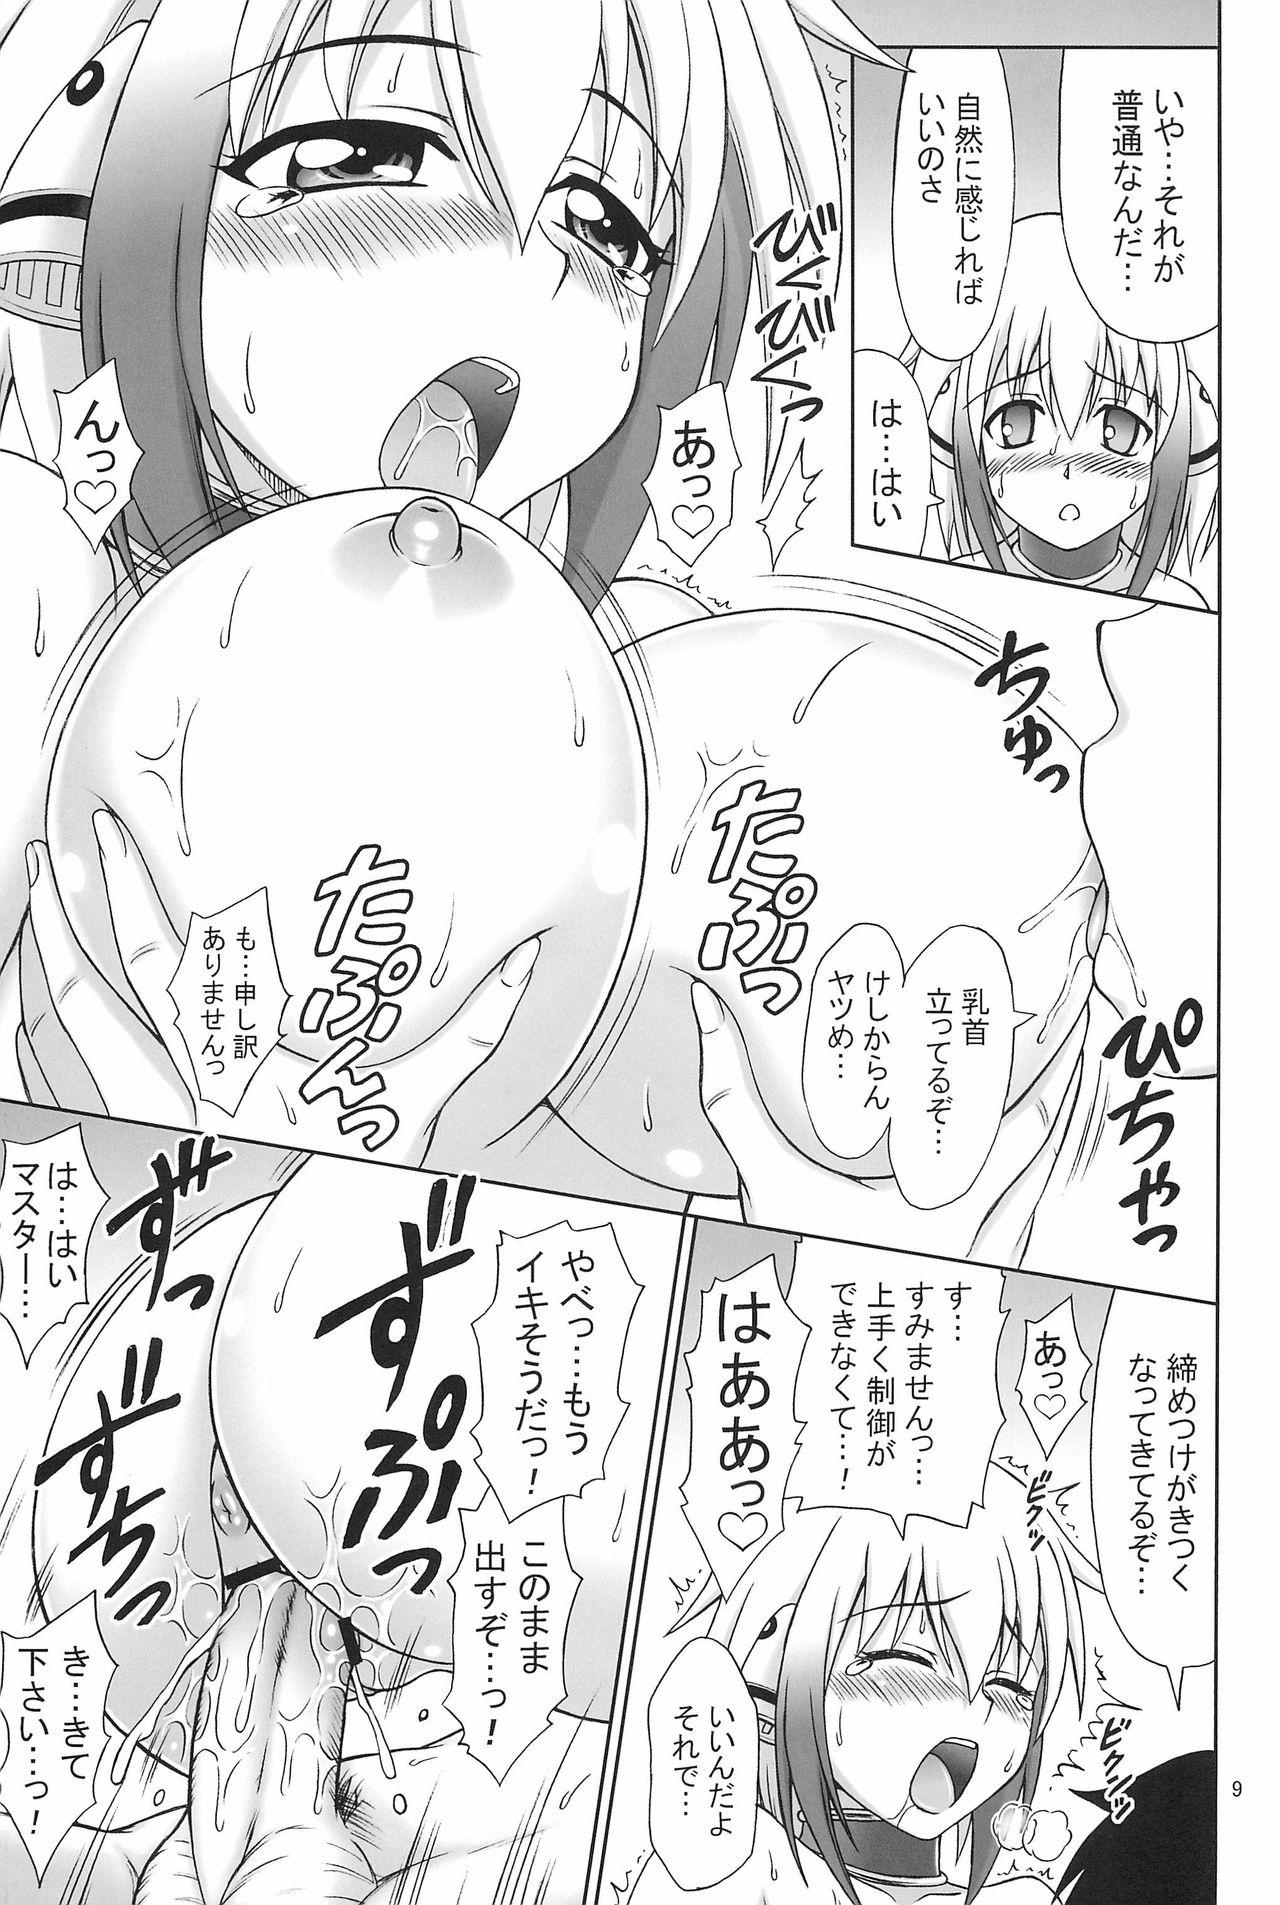 Nasty Porn Kyokumen Oppai Double - Sora no otoshimono Sucking Dick - Page 9